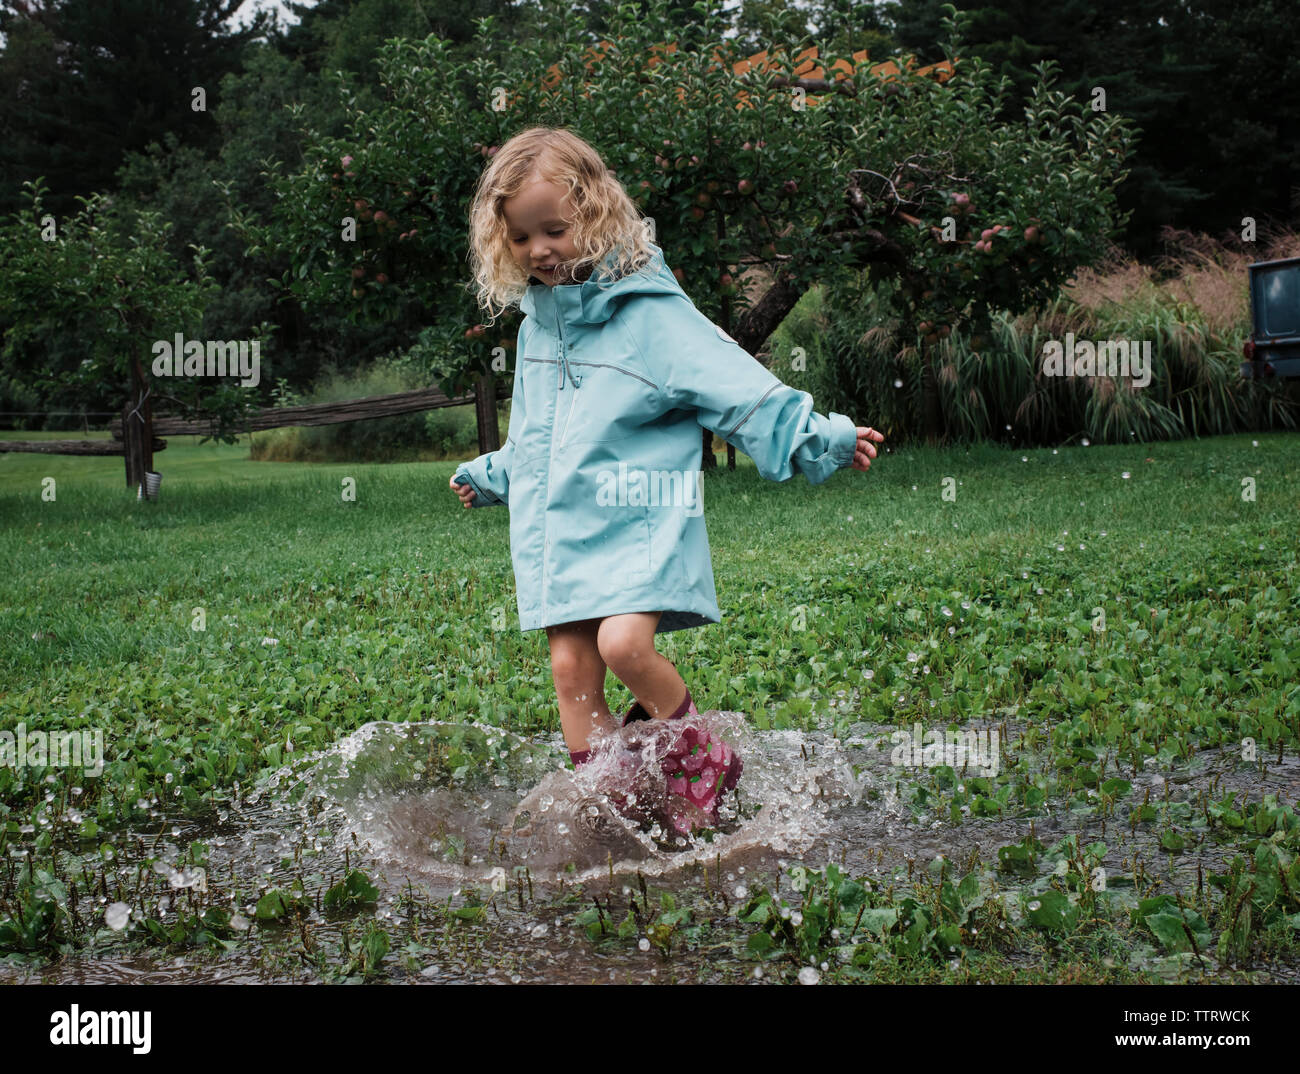 Playful girl splashing water en flaque à verger Banque D'Images